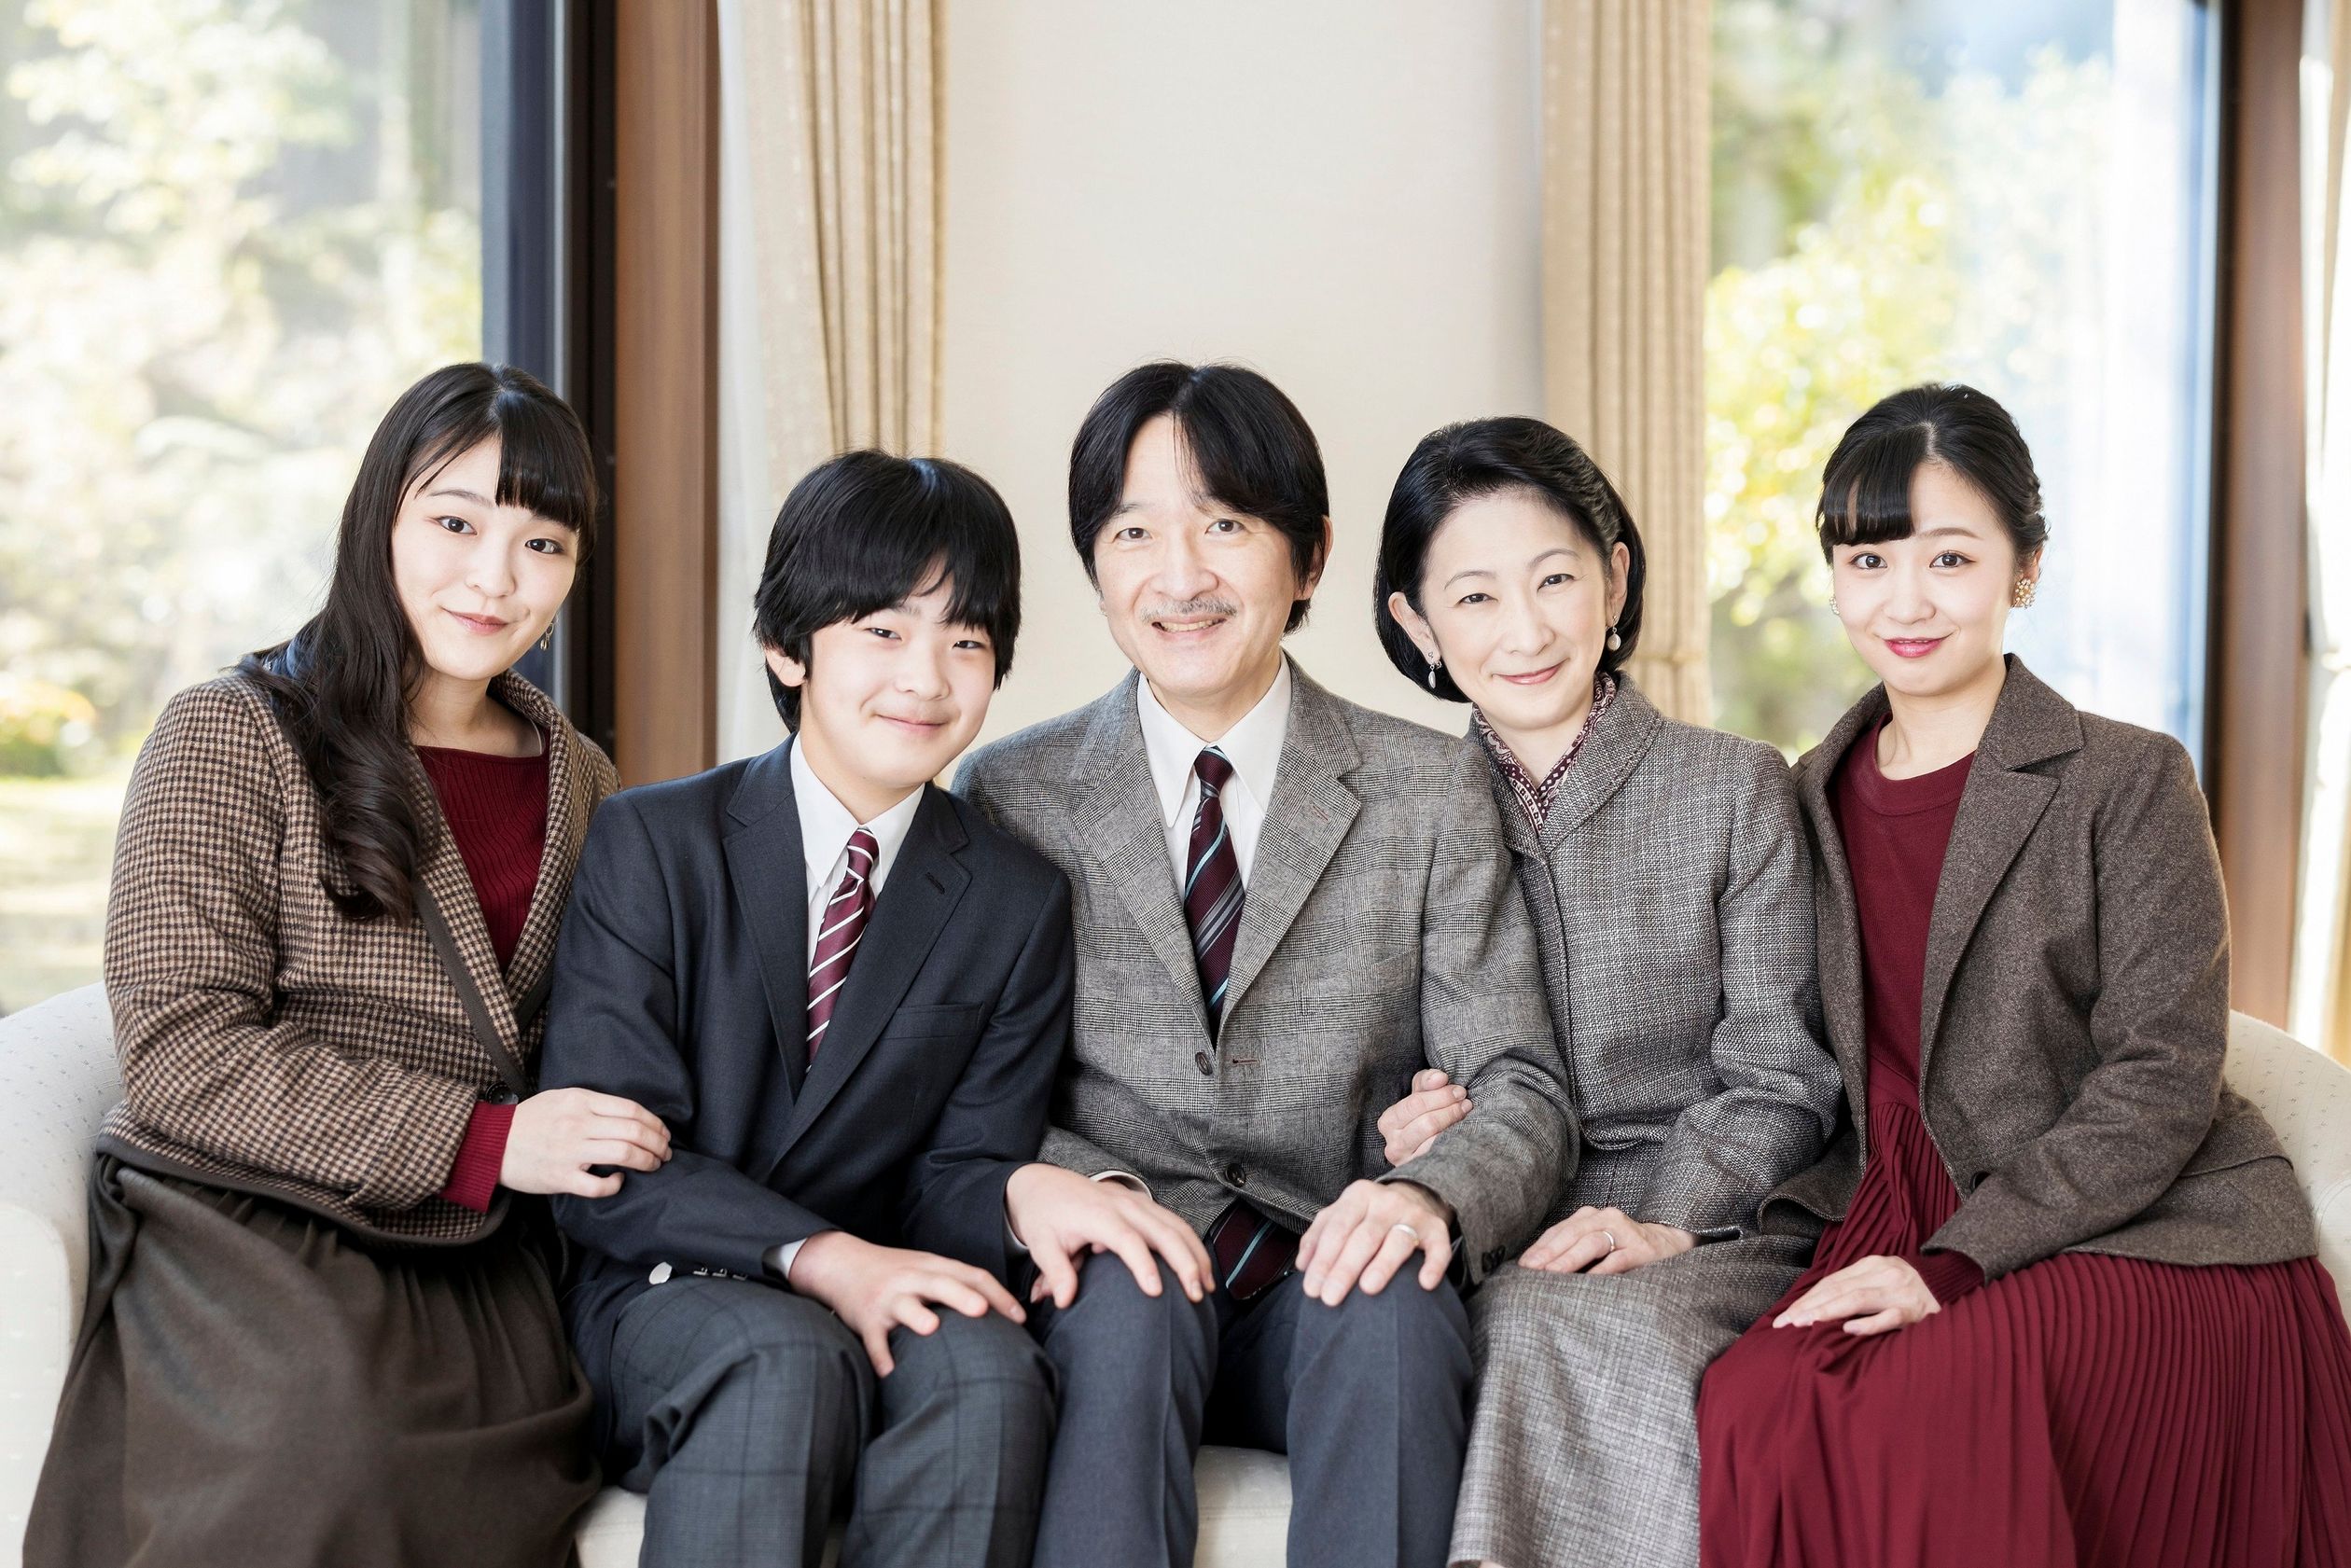 Prinses Mako (links) met haar broertje prins Hisahito, haar ouders kroonprins Akishino en